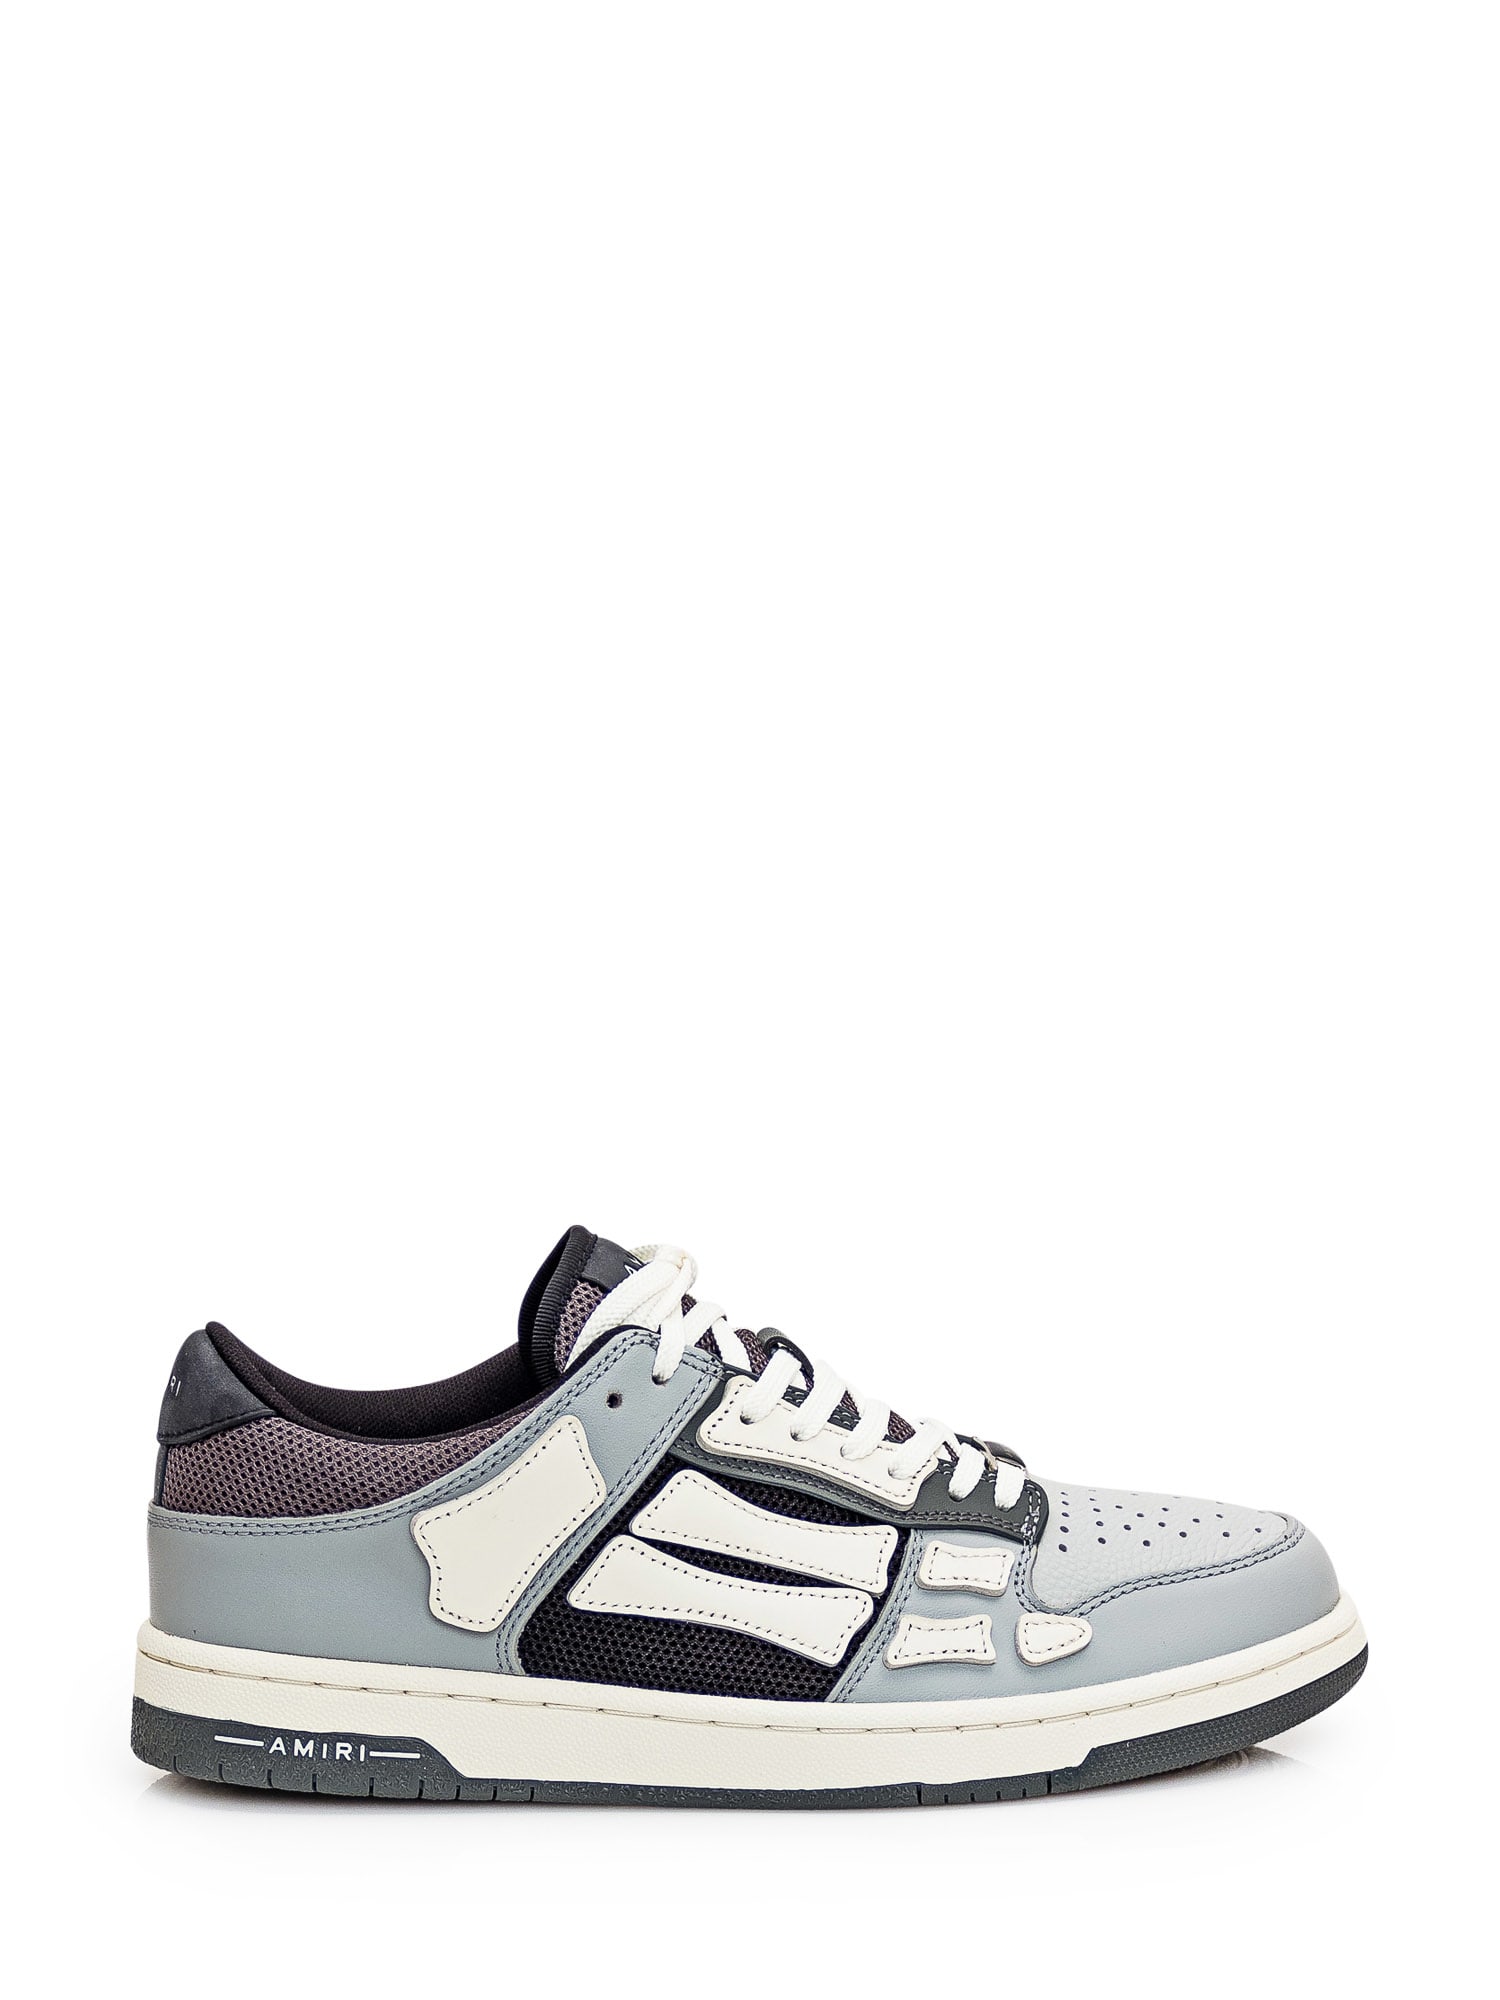 Shop Amiri Skel Top Low Sneaker In Grey